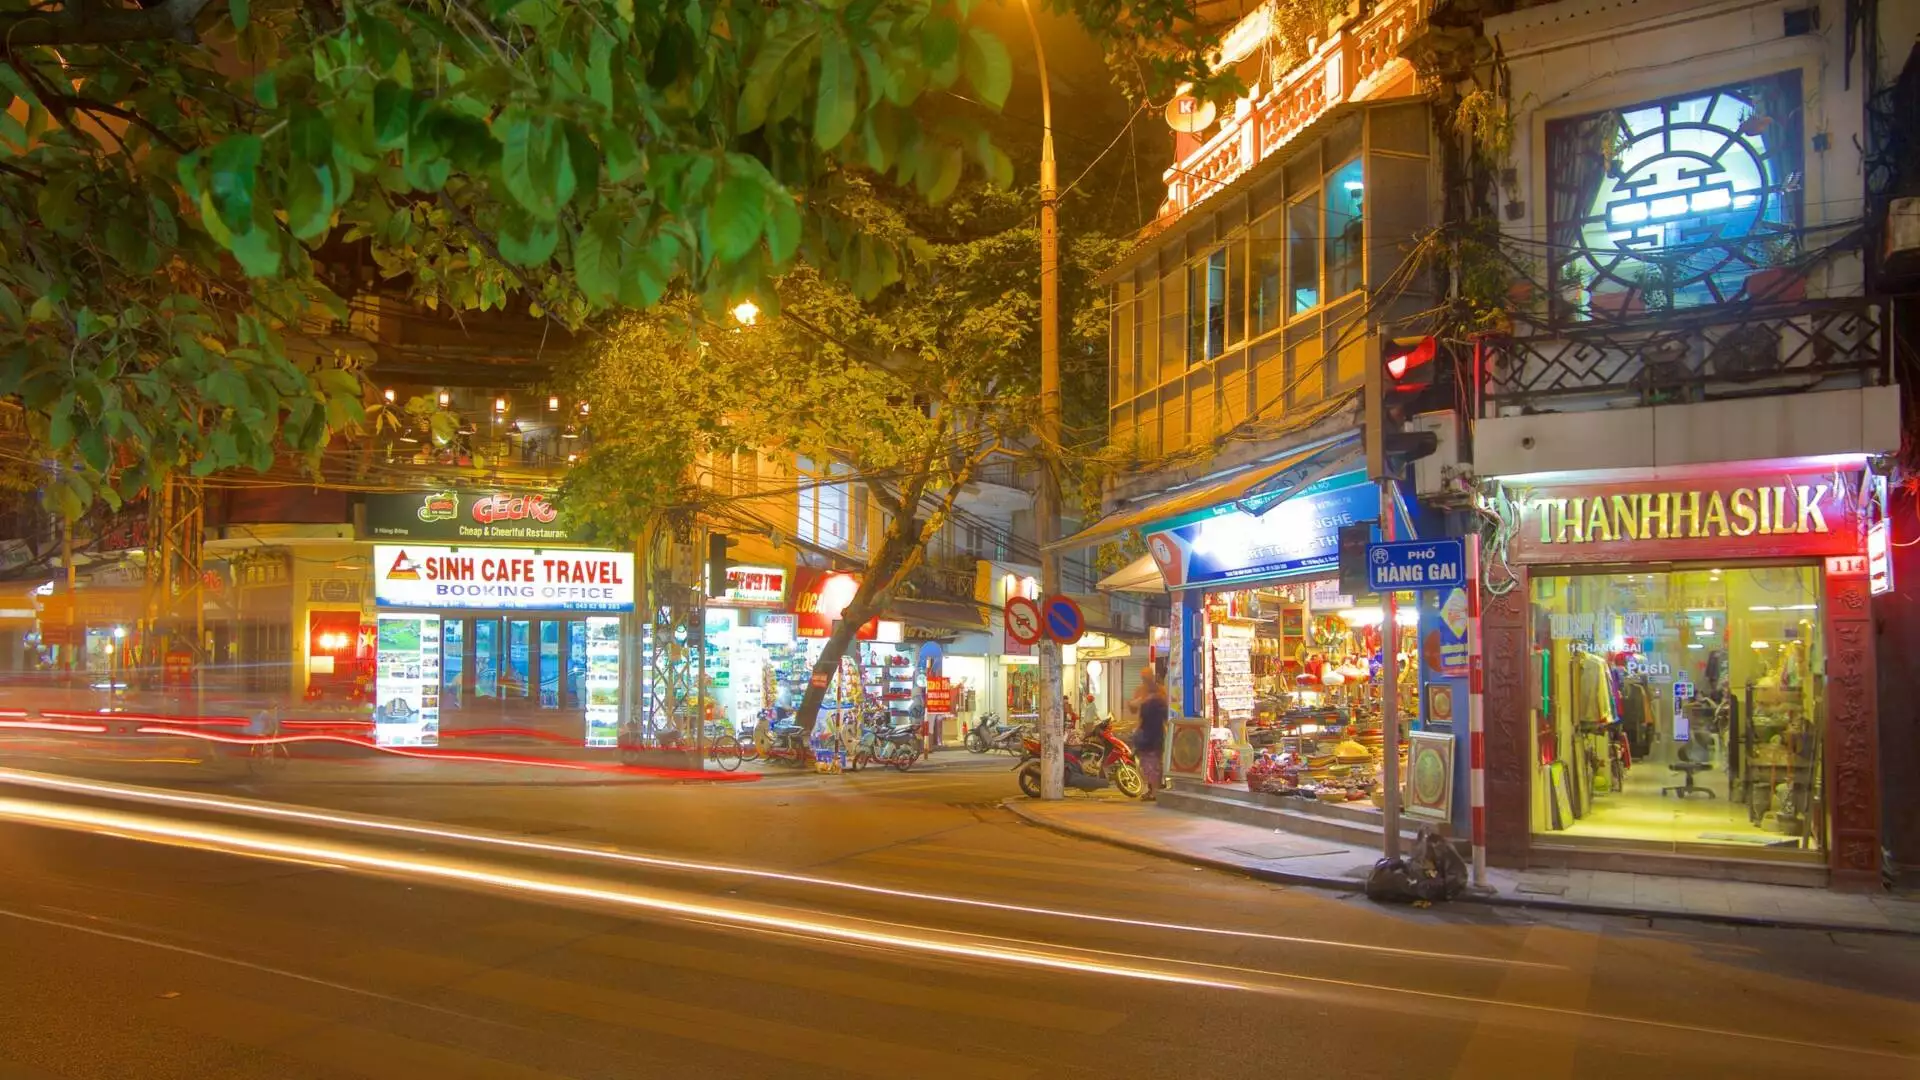 French Quarter On Hanoi In Vietnam